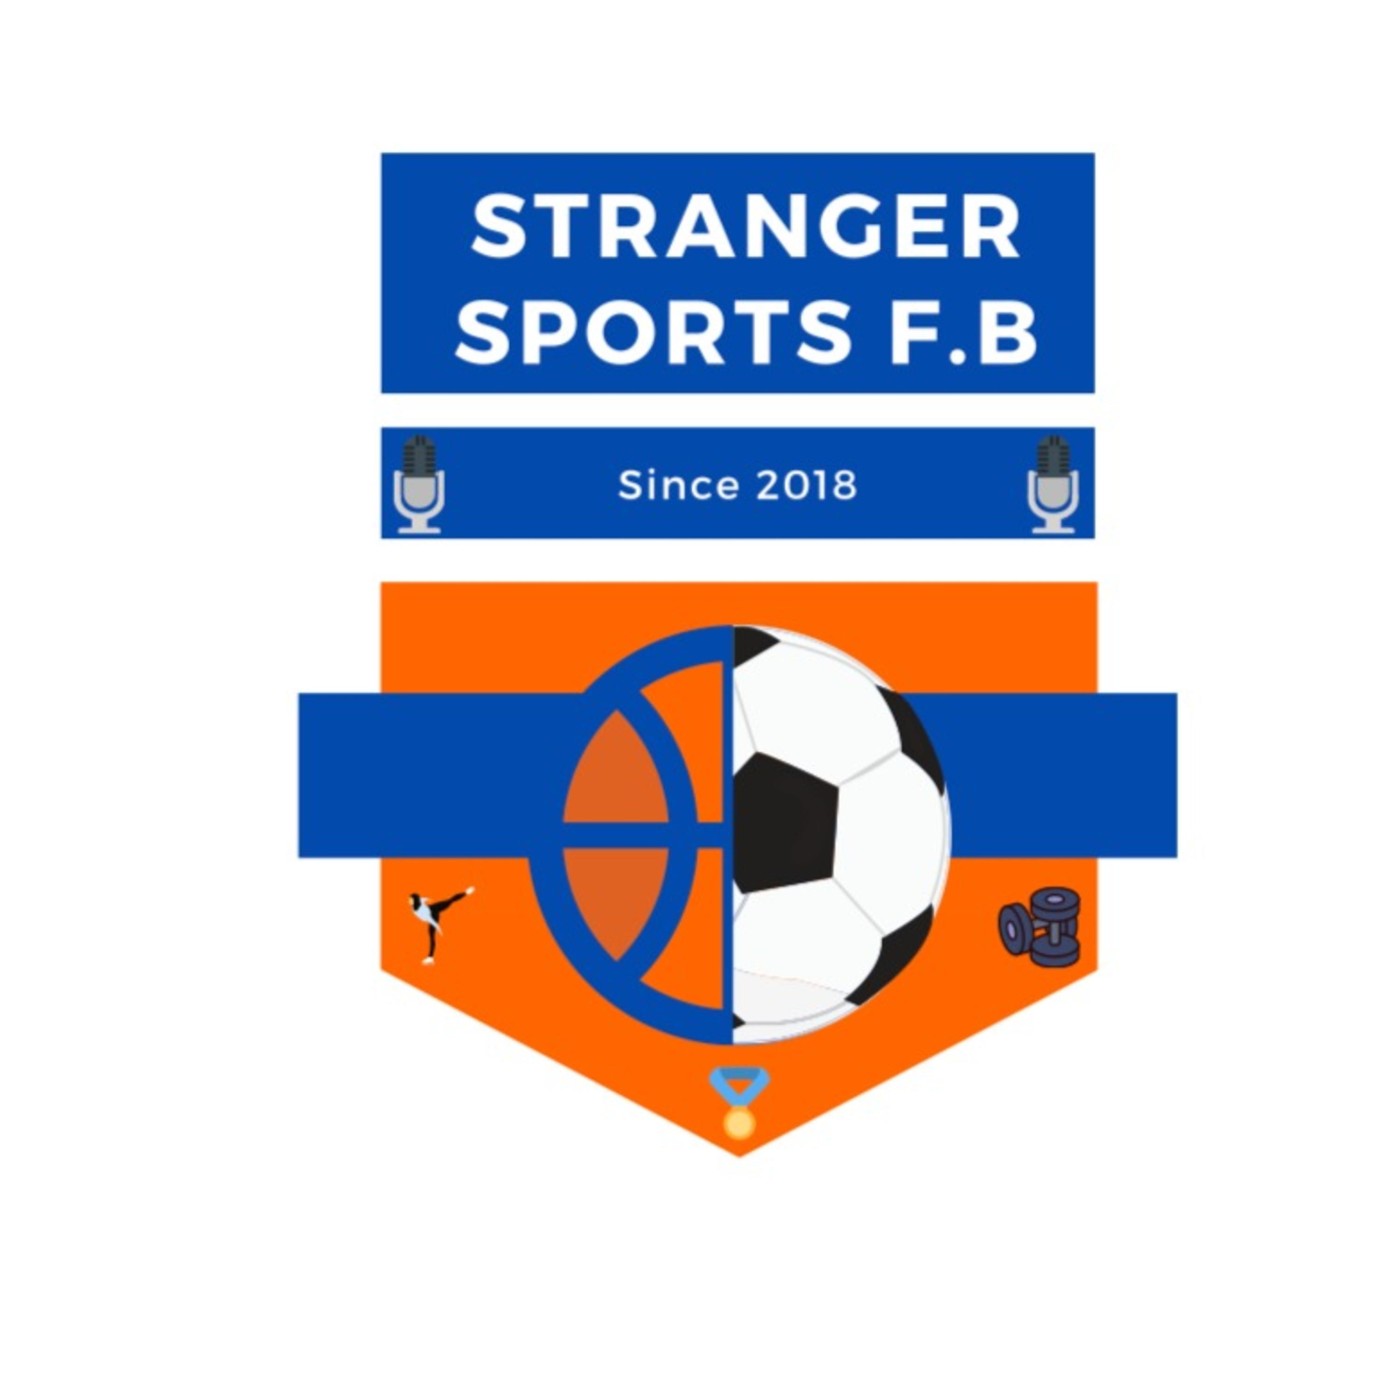 Stranger sports #8